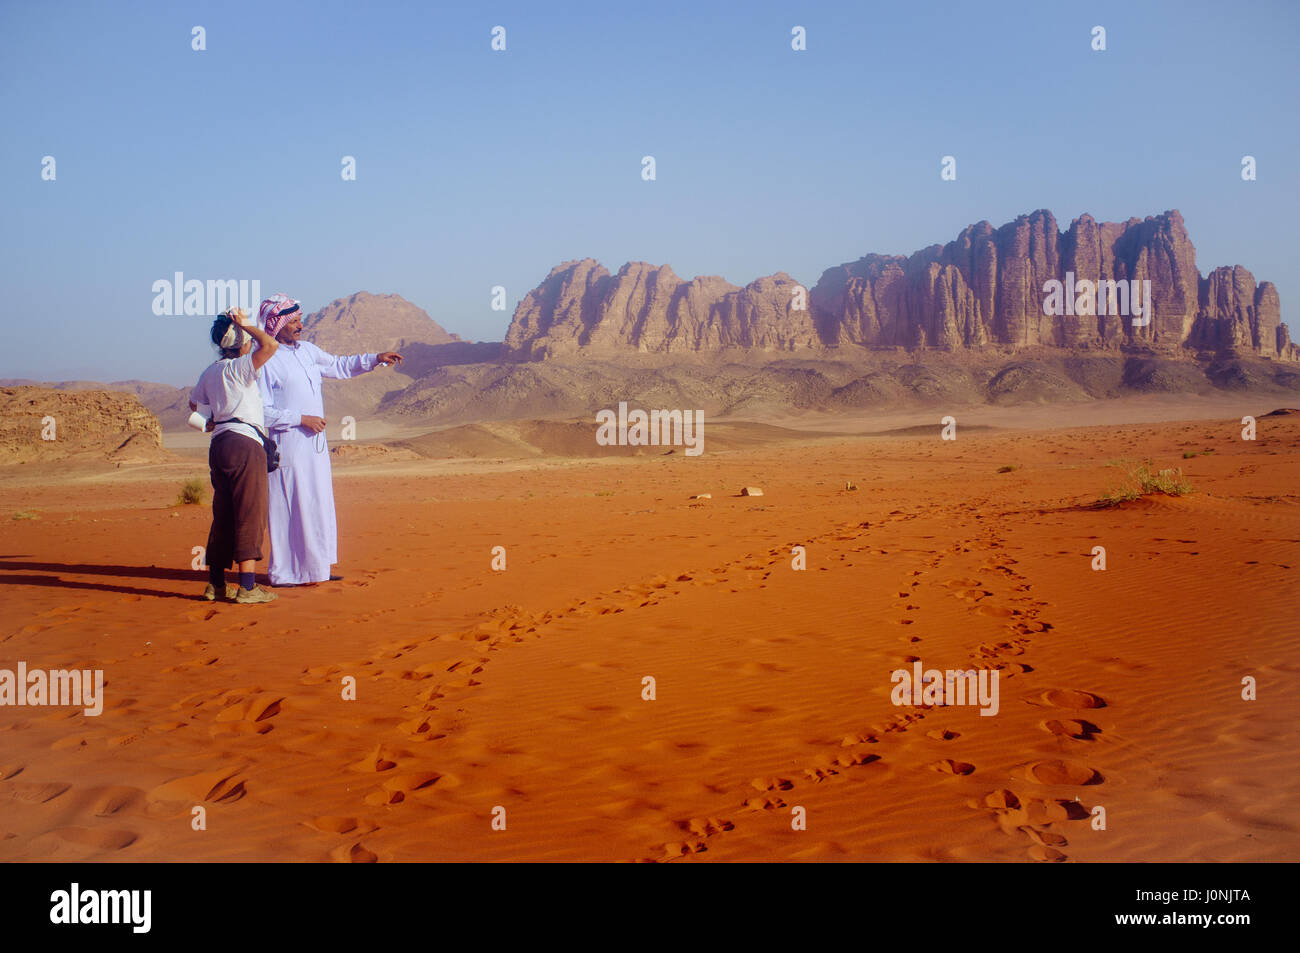 La formation des roches illustrant bédouine au nom d'une femme touriste. Le désert de Wadi Rum. La Jordanie. Banque D'Images